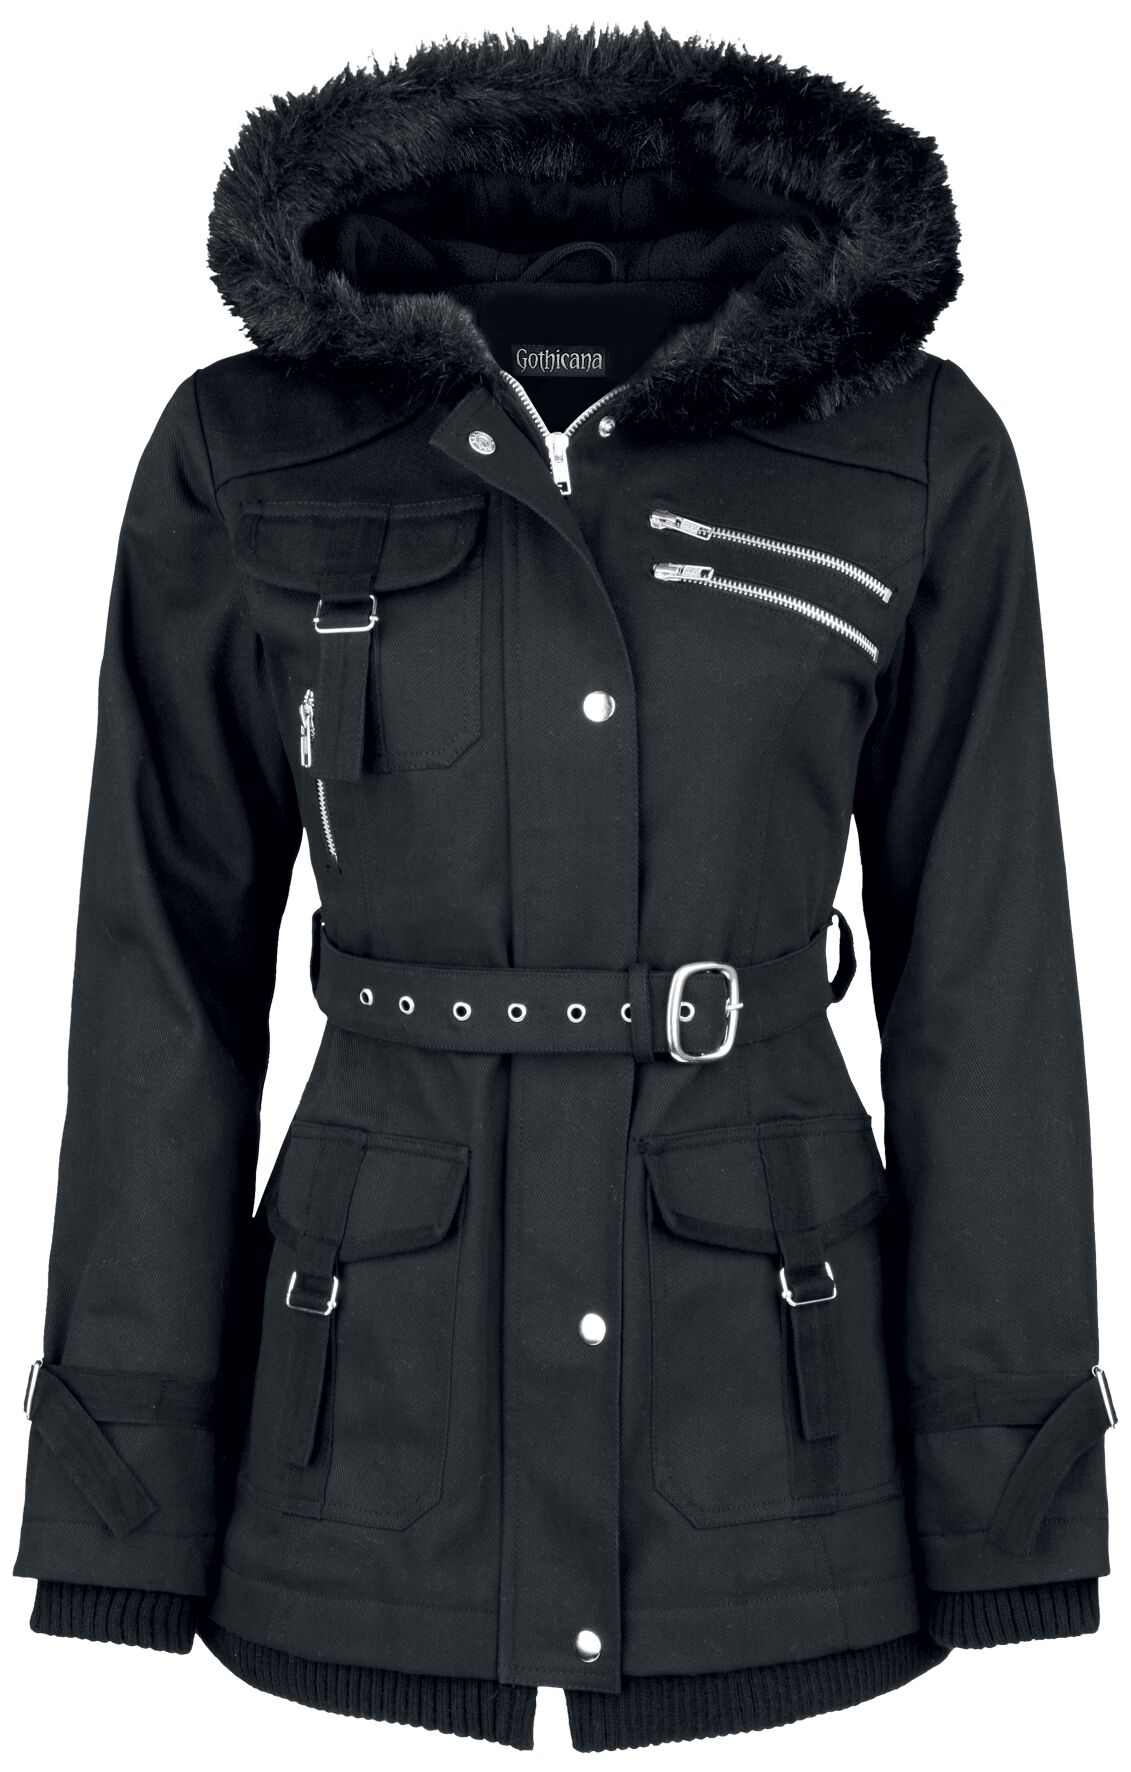 Gothicana by EMP - Gothic Winterjacke - Multi Pocket Jacket - S bis 6XL - für Damen - Größe 4XL - schwarz